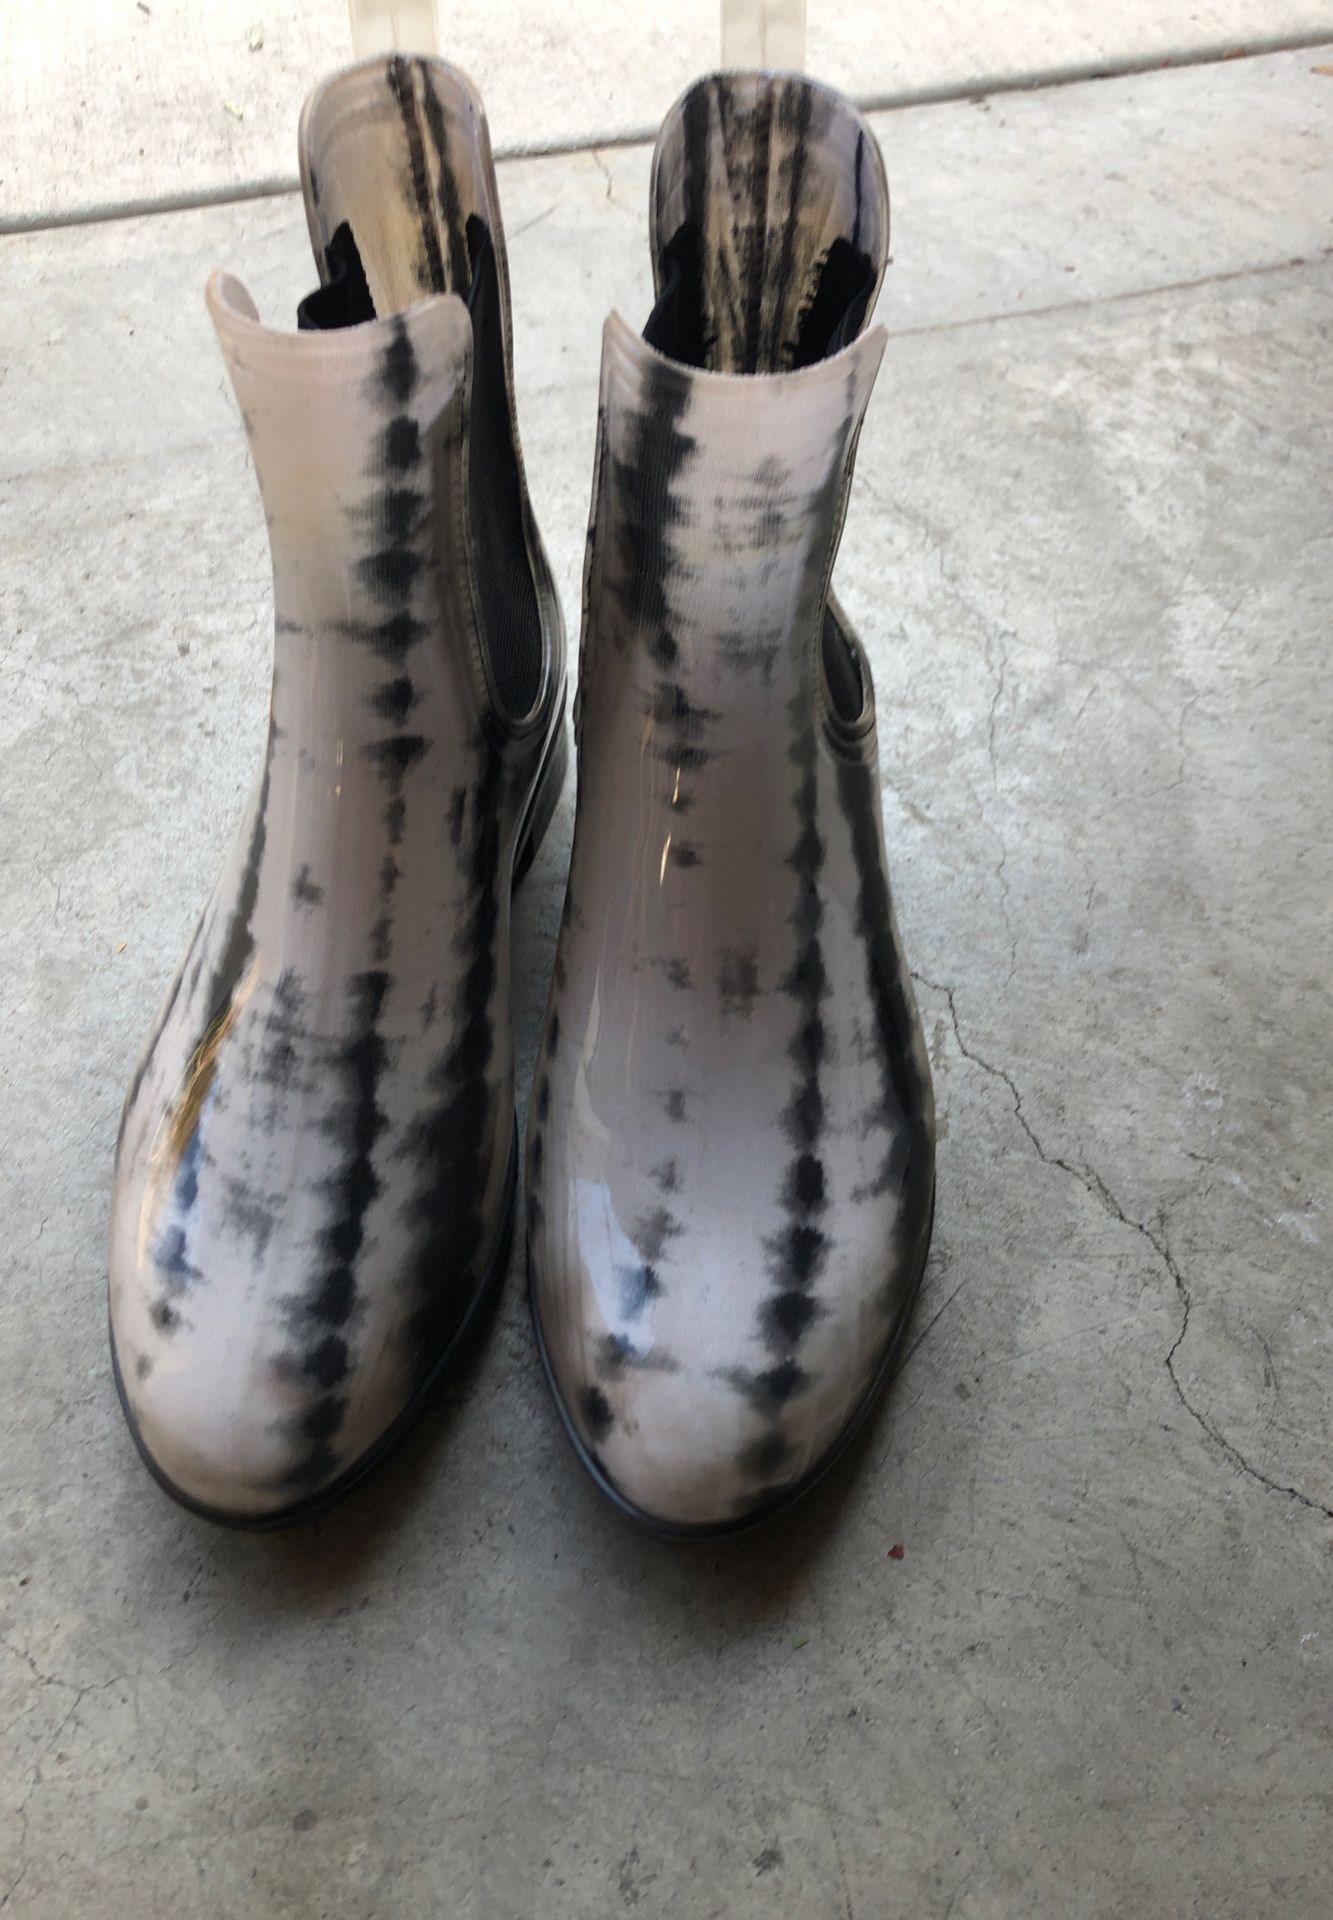 Rain boots size 7